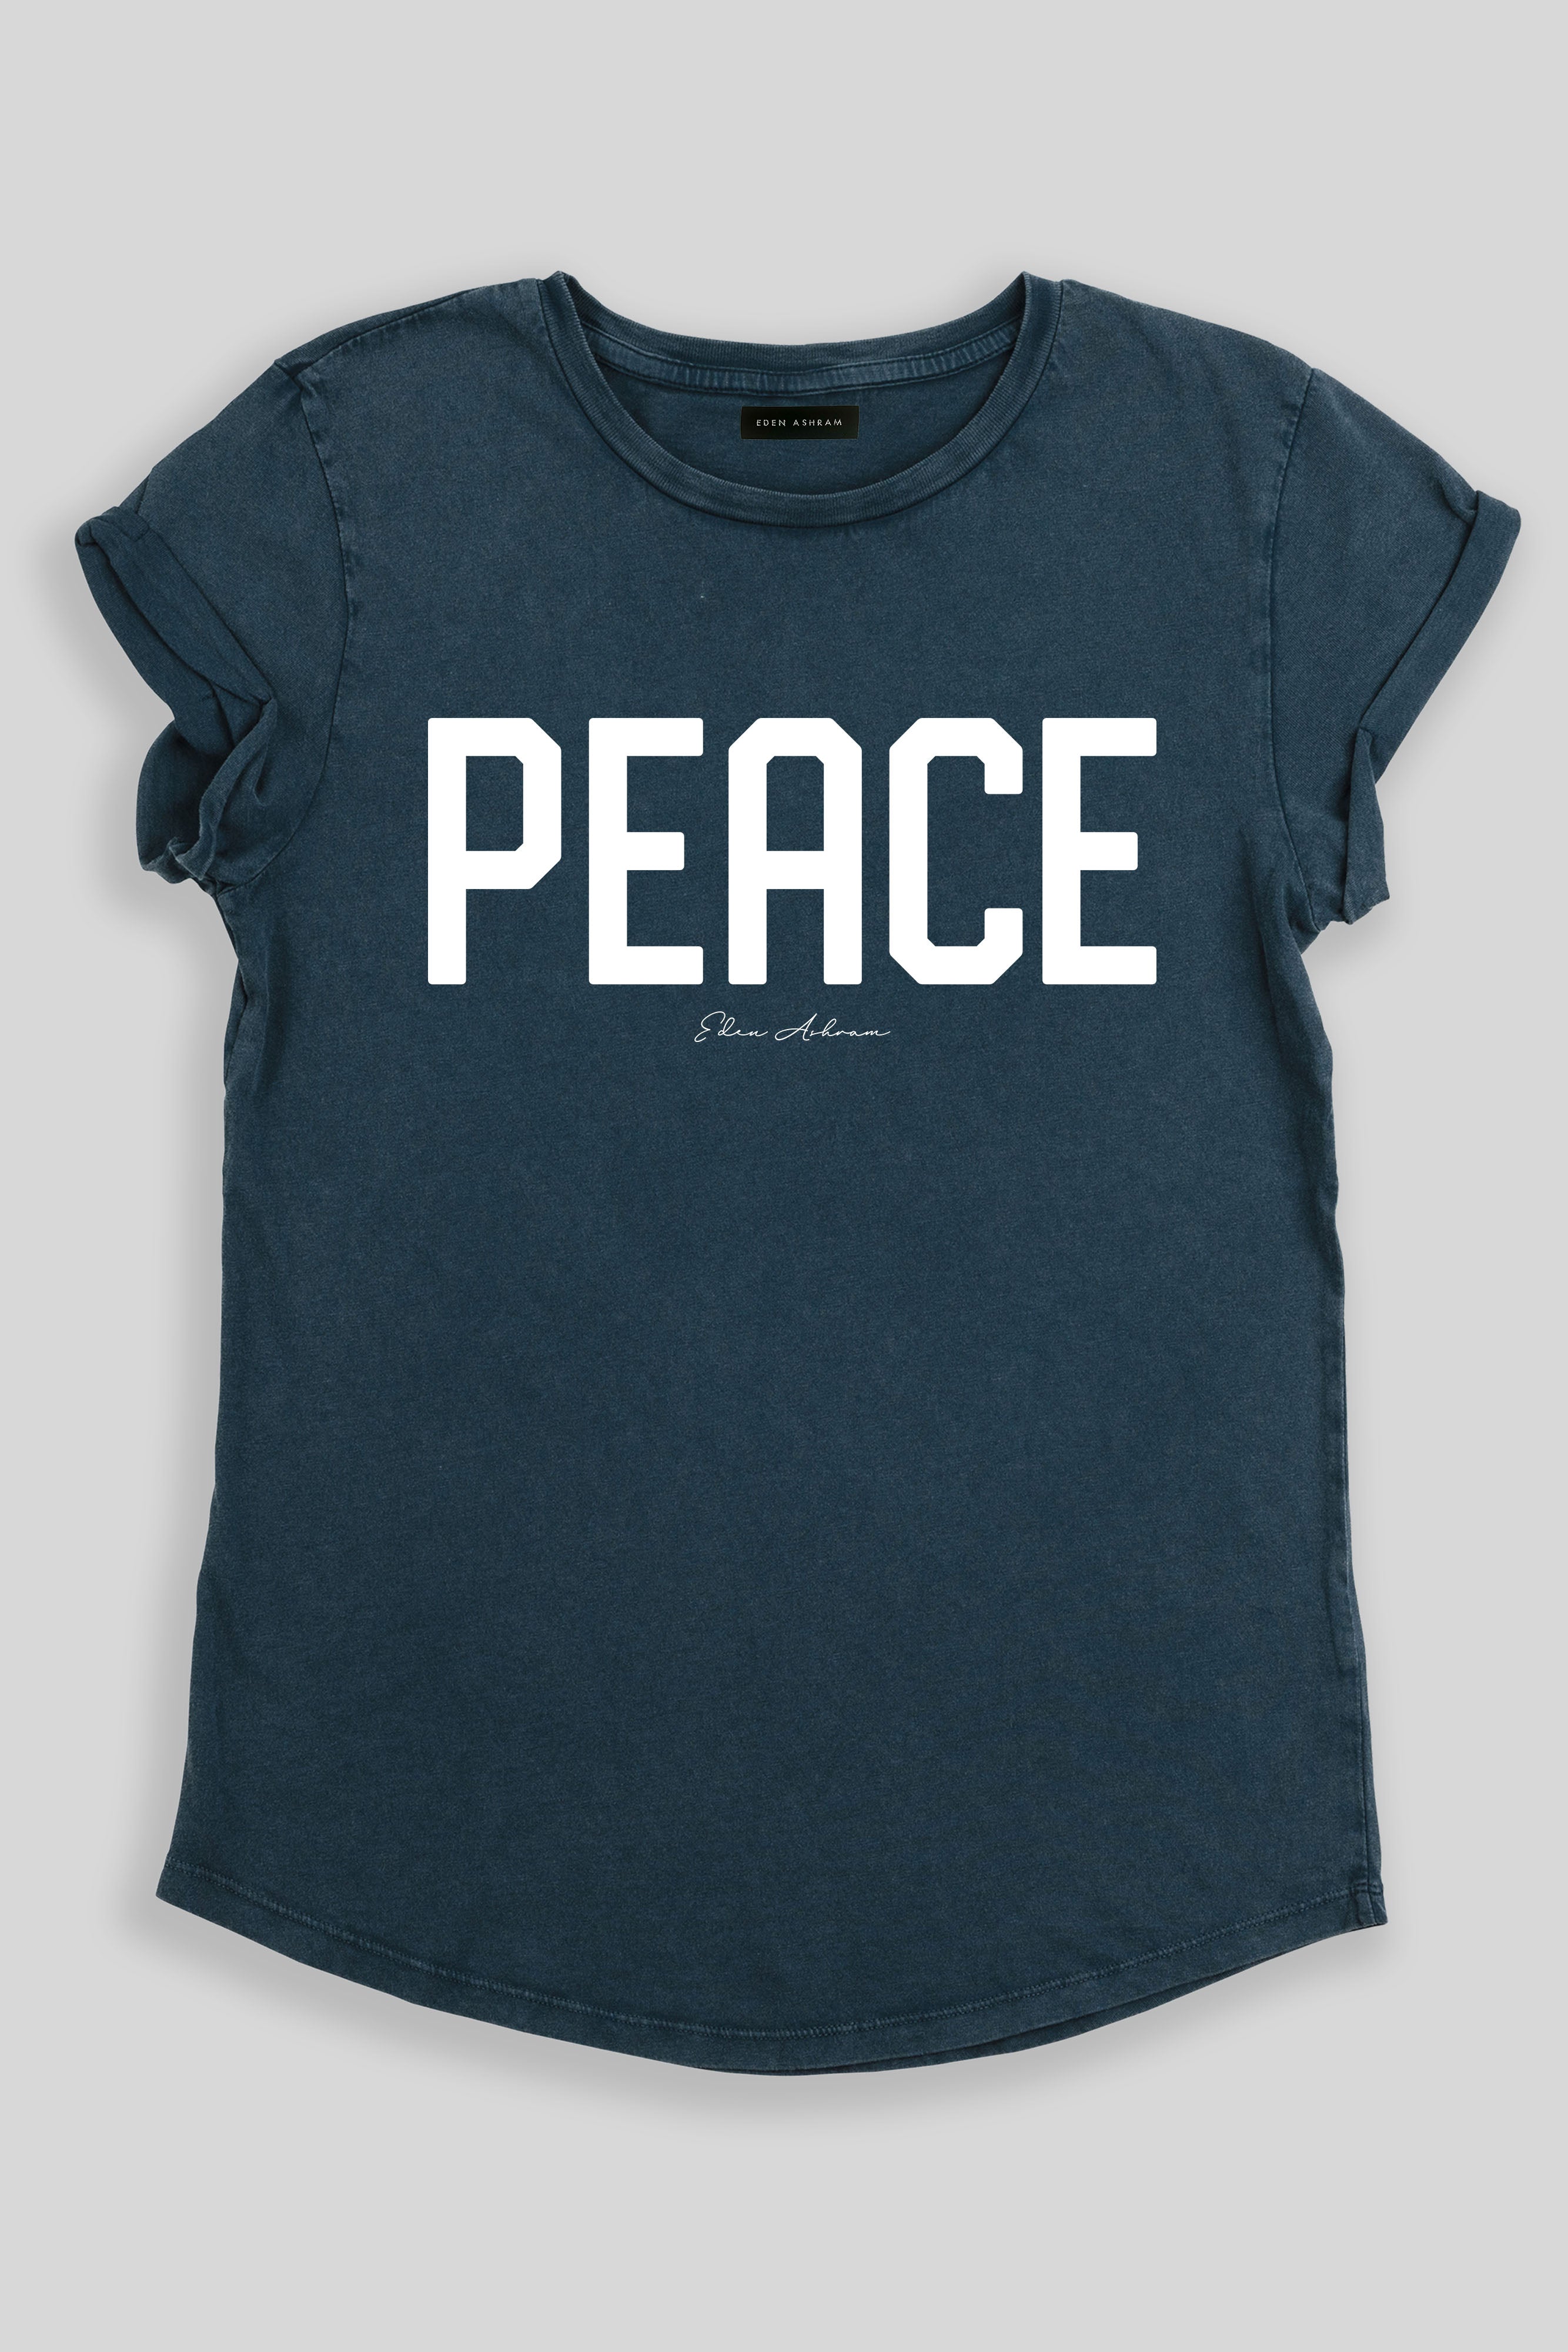 EDEN ASHRAM PEACE Rolled Sleeve T-Shirt Stonewash Denim